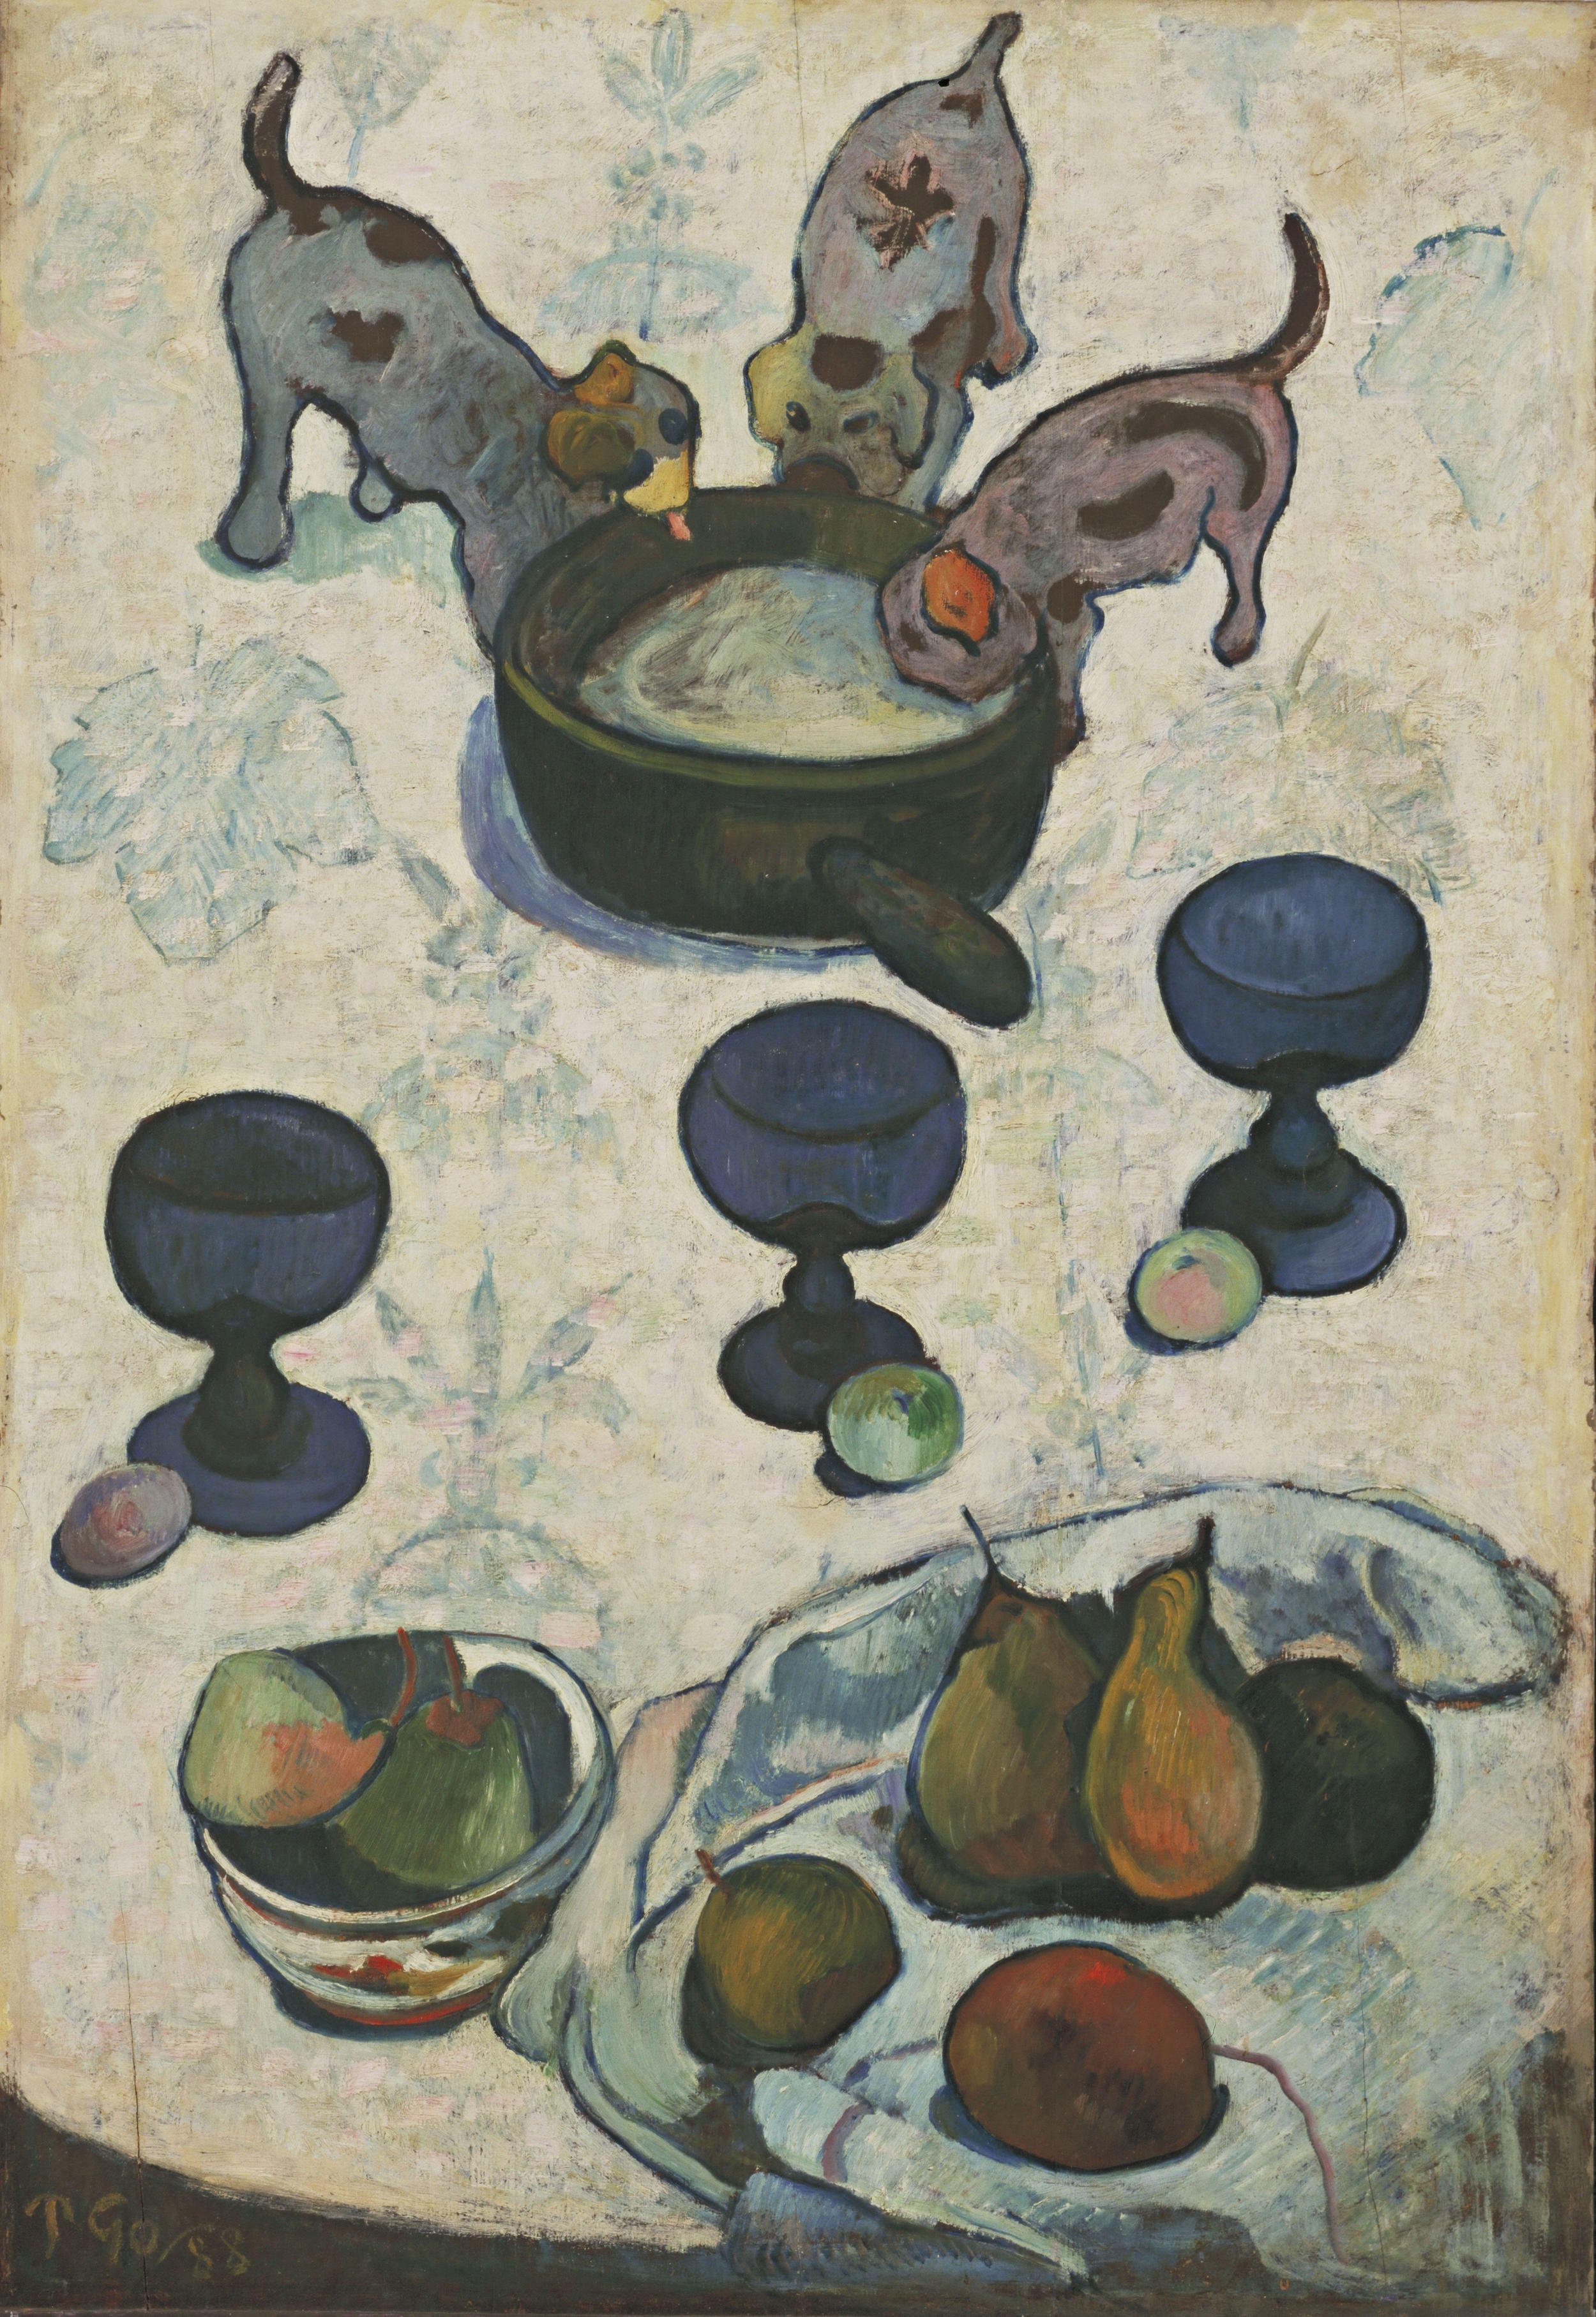 Natură moartă cu trei cățeluși  by Paul Gauguin - 1888 - 92 cm x 63 cm 